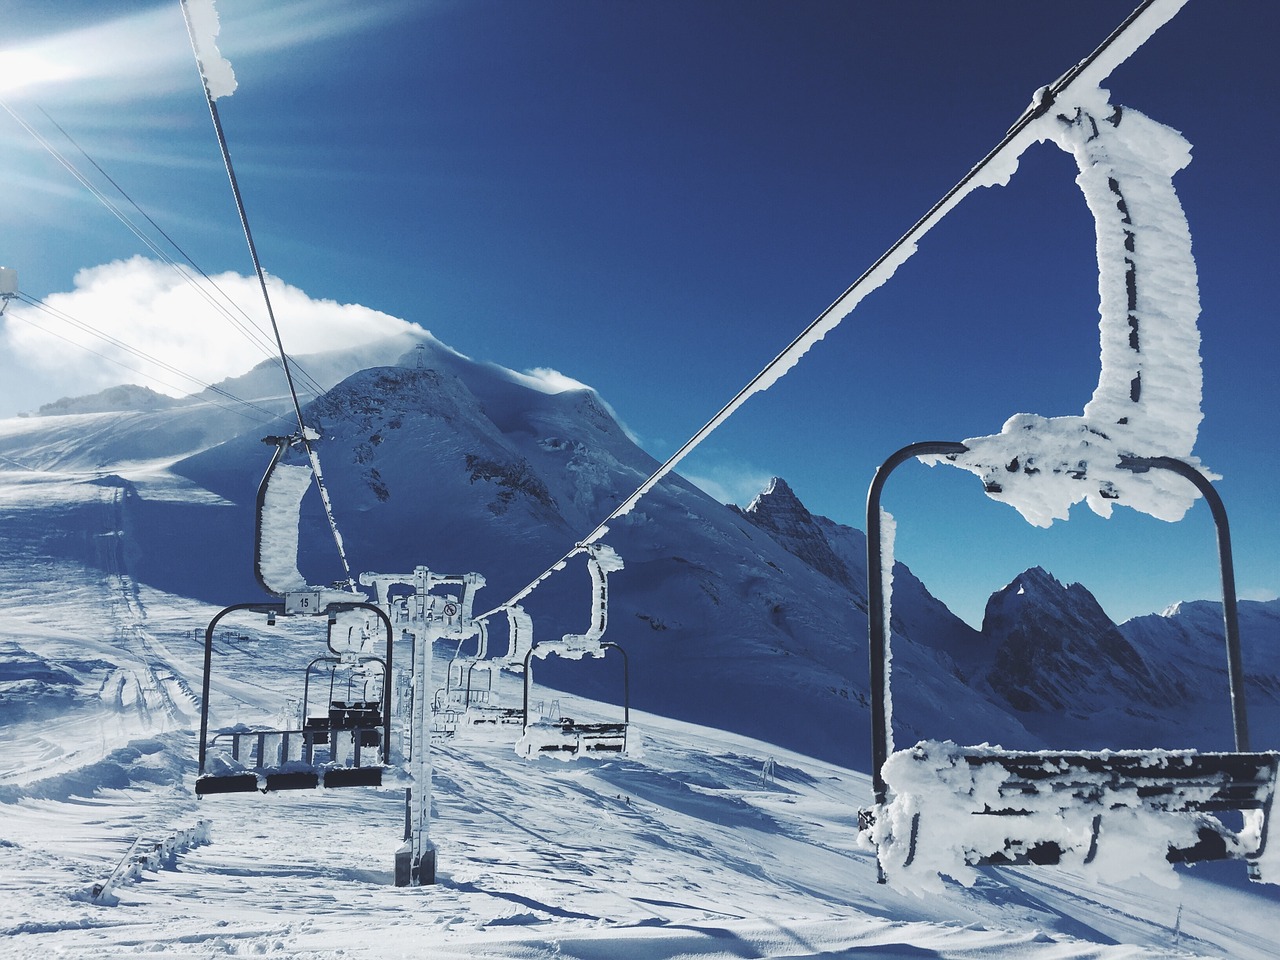 ski lifts ski-lift lifts free photo